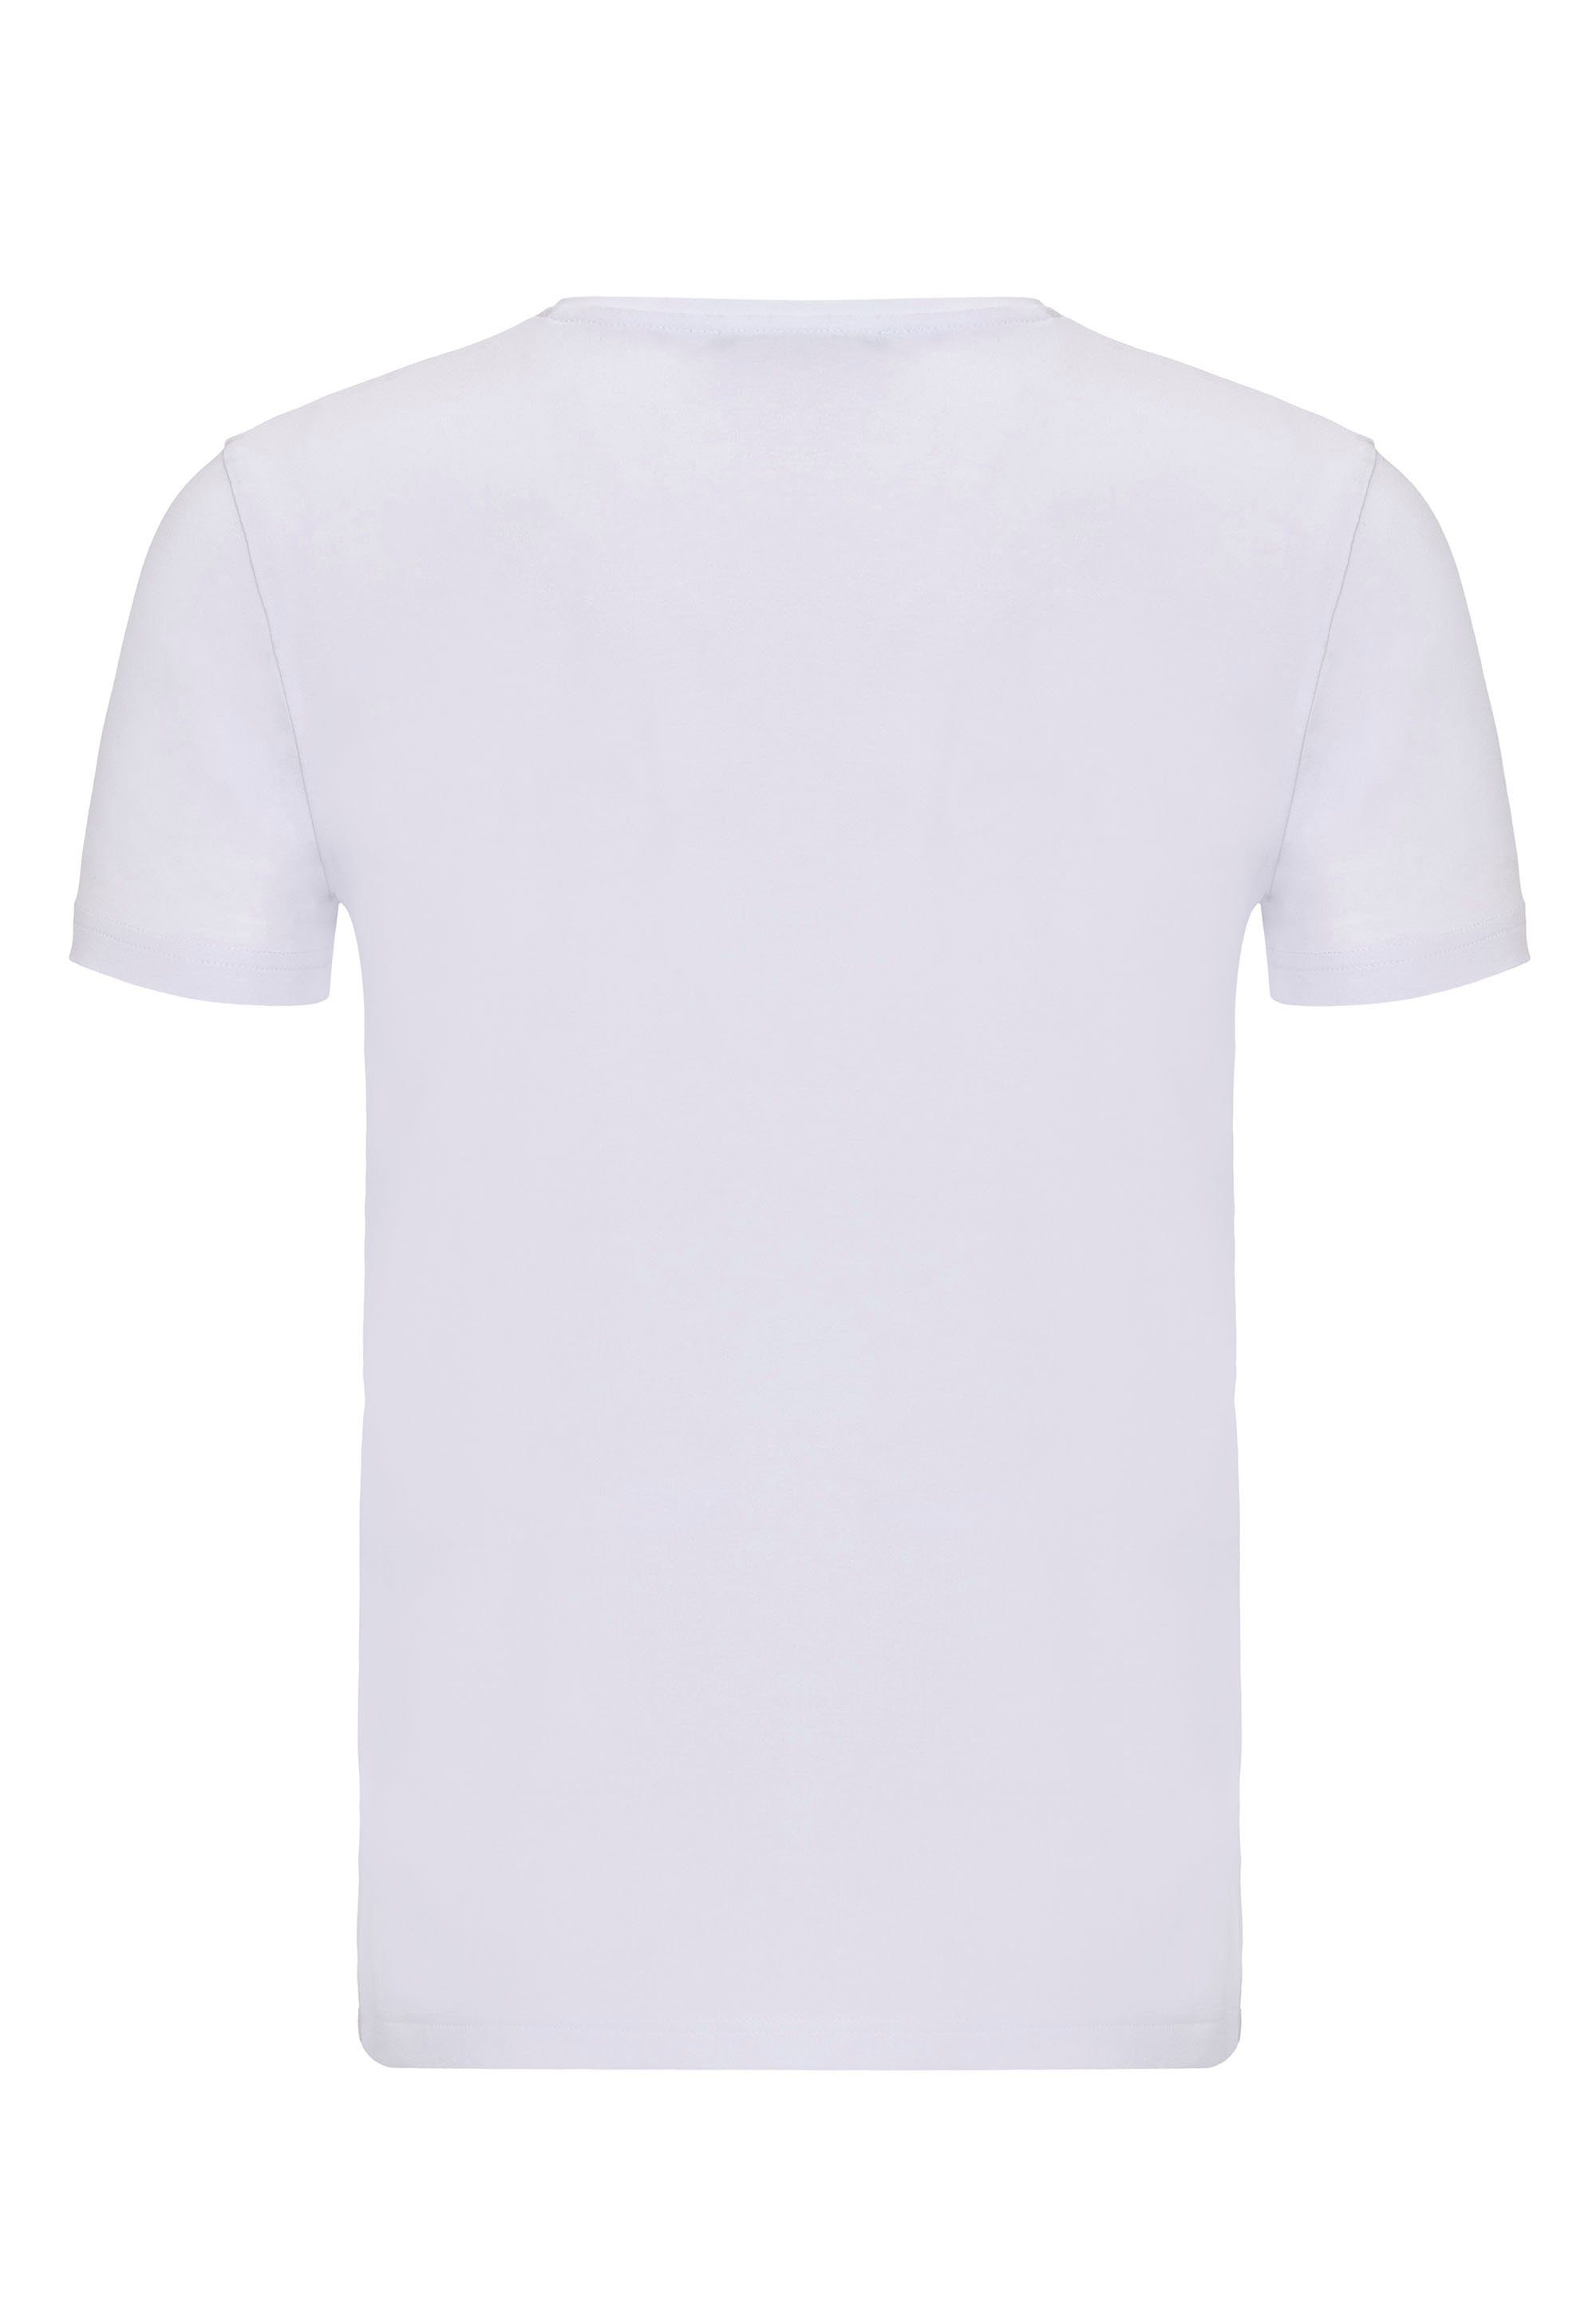 RedBridge Dange modischem weiß T-Shirt mit V-Ausschnitt